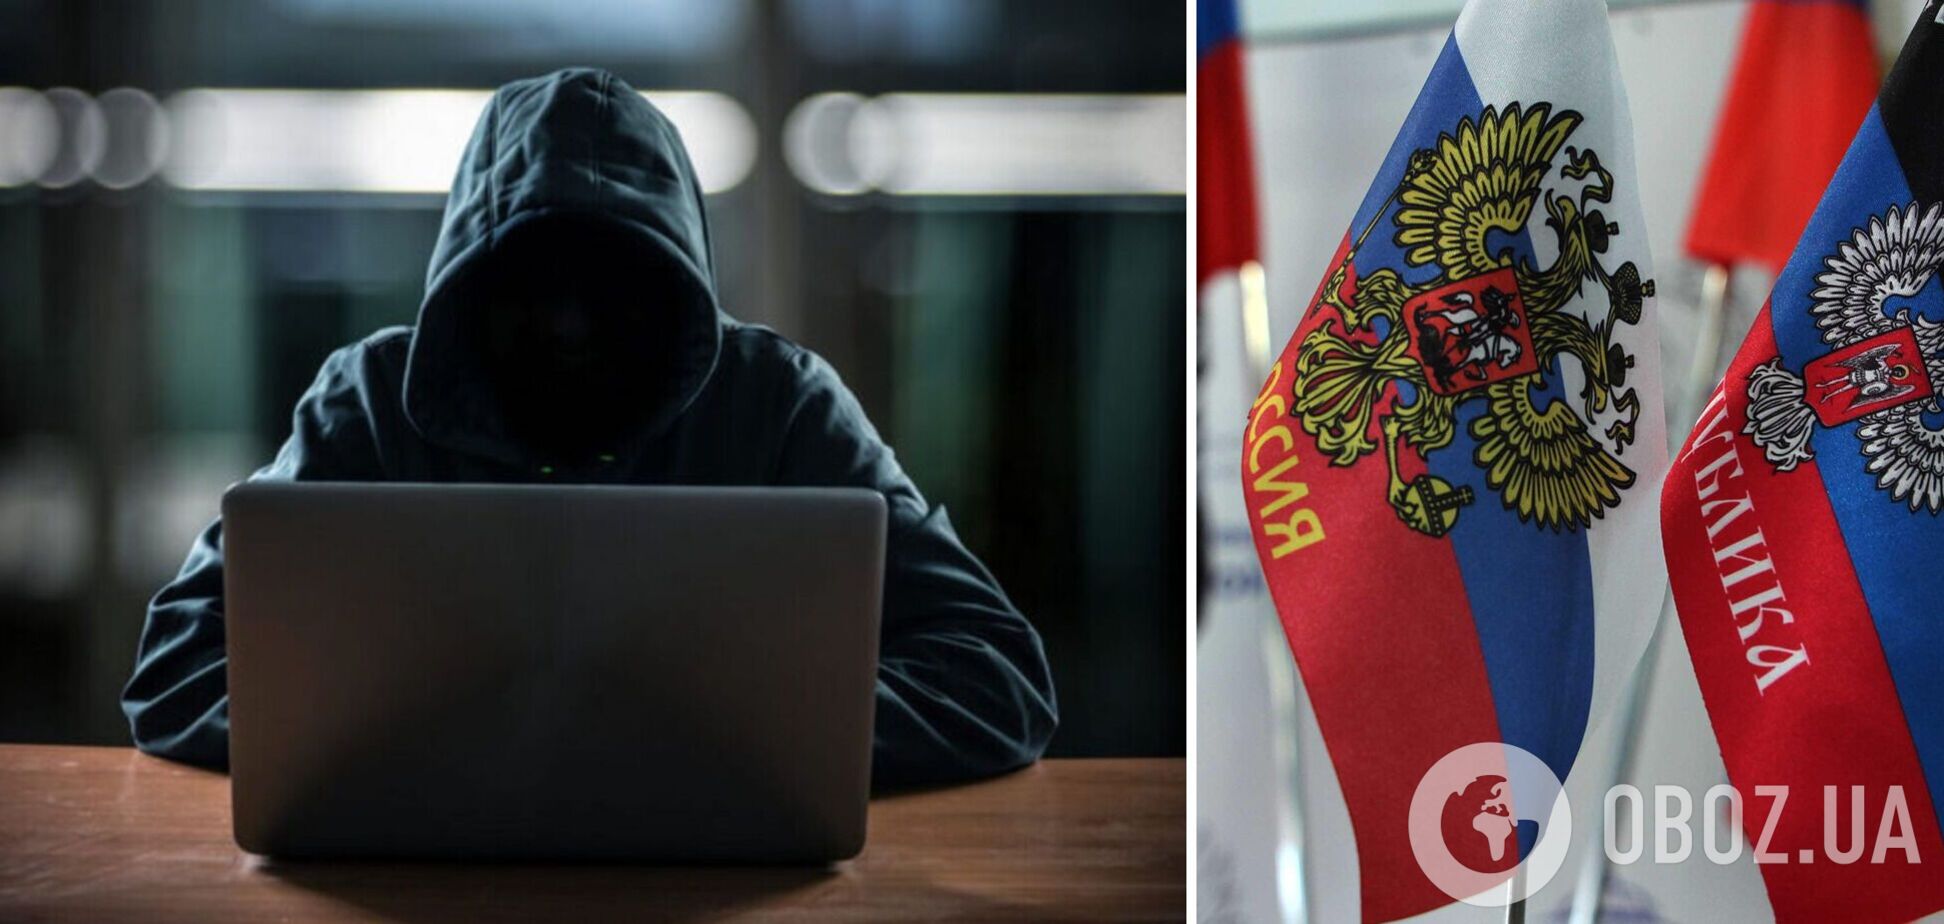 Сайти органів влади України атакували хакери з території 'ЛНР': що відомо